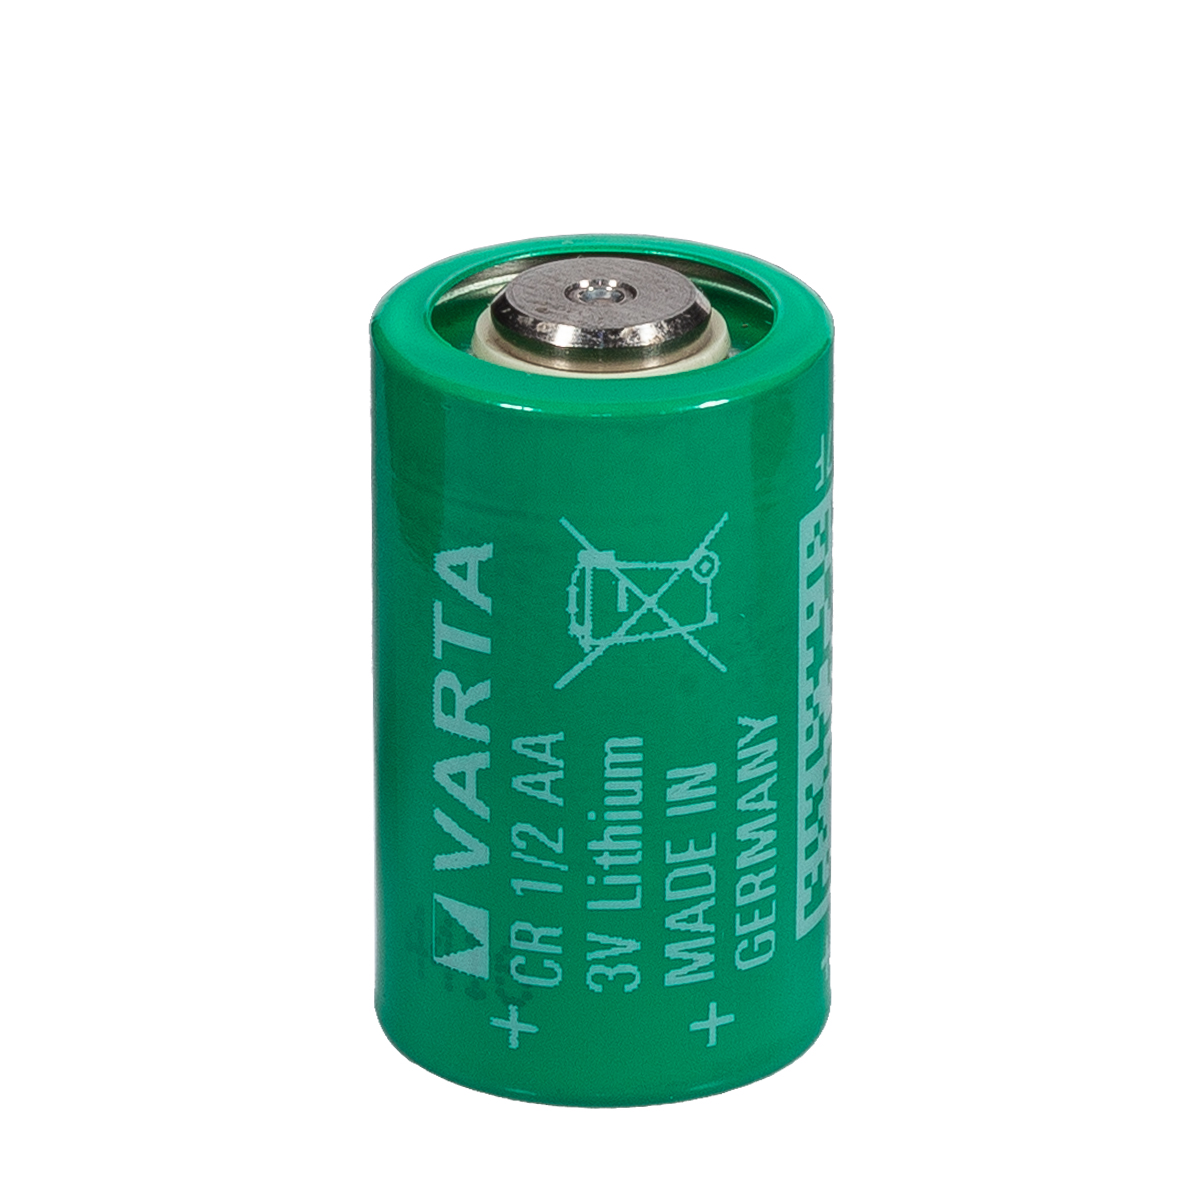 Battery 3.6 v. CR 1/2 AA Varta 3v. Varta cr1/2 AA. 3.0V 14250 CR 1/2 AA Varta Lithium. 14250 - 1/2 AA Varta 3.0v.